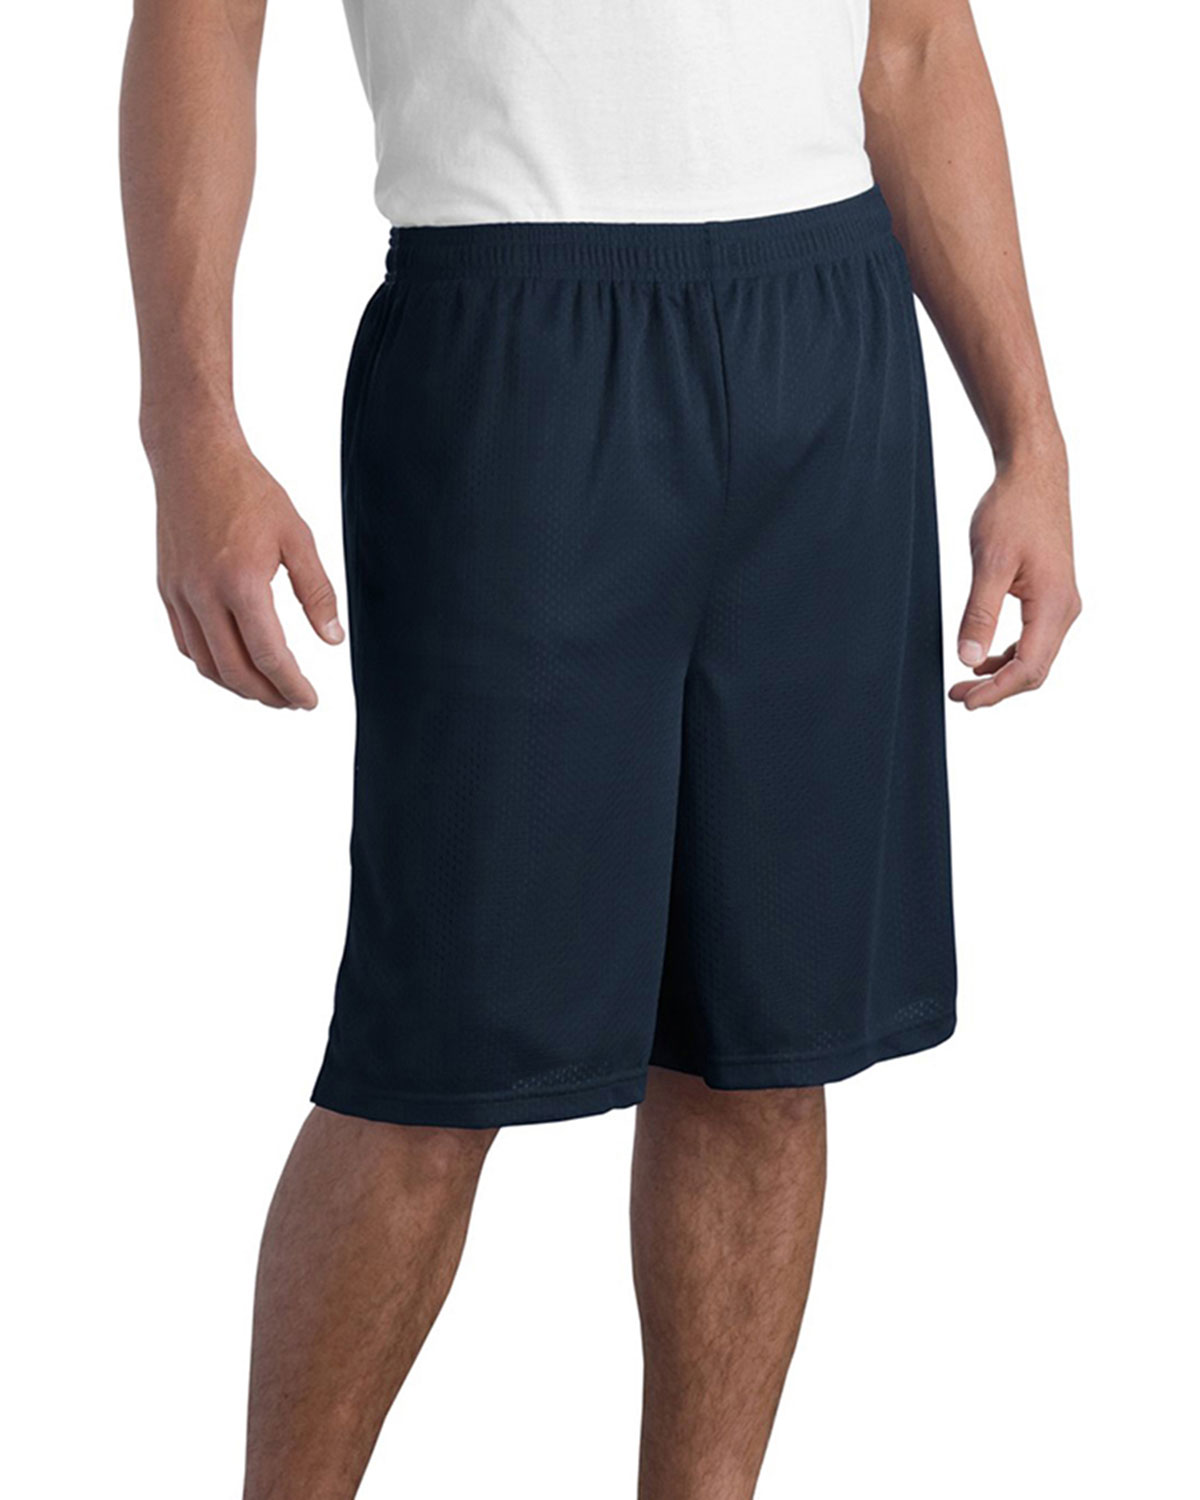 Sport-Tek Long Mesh Shorts at Big and Tall Apparel Store